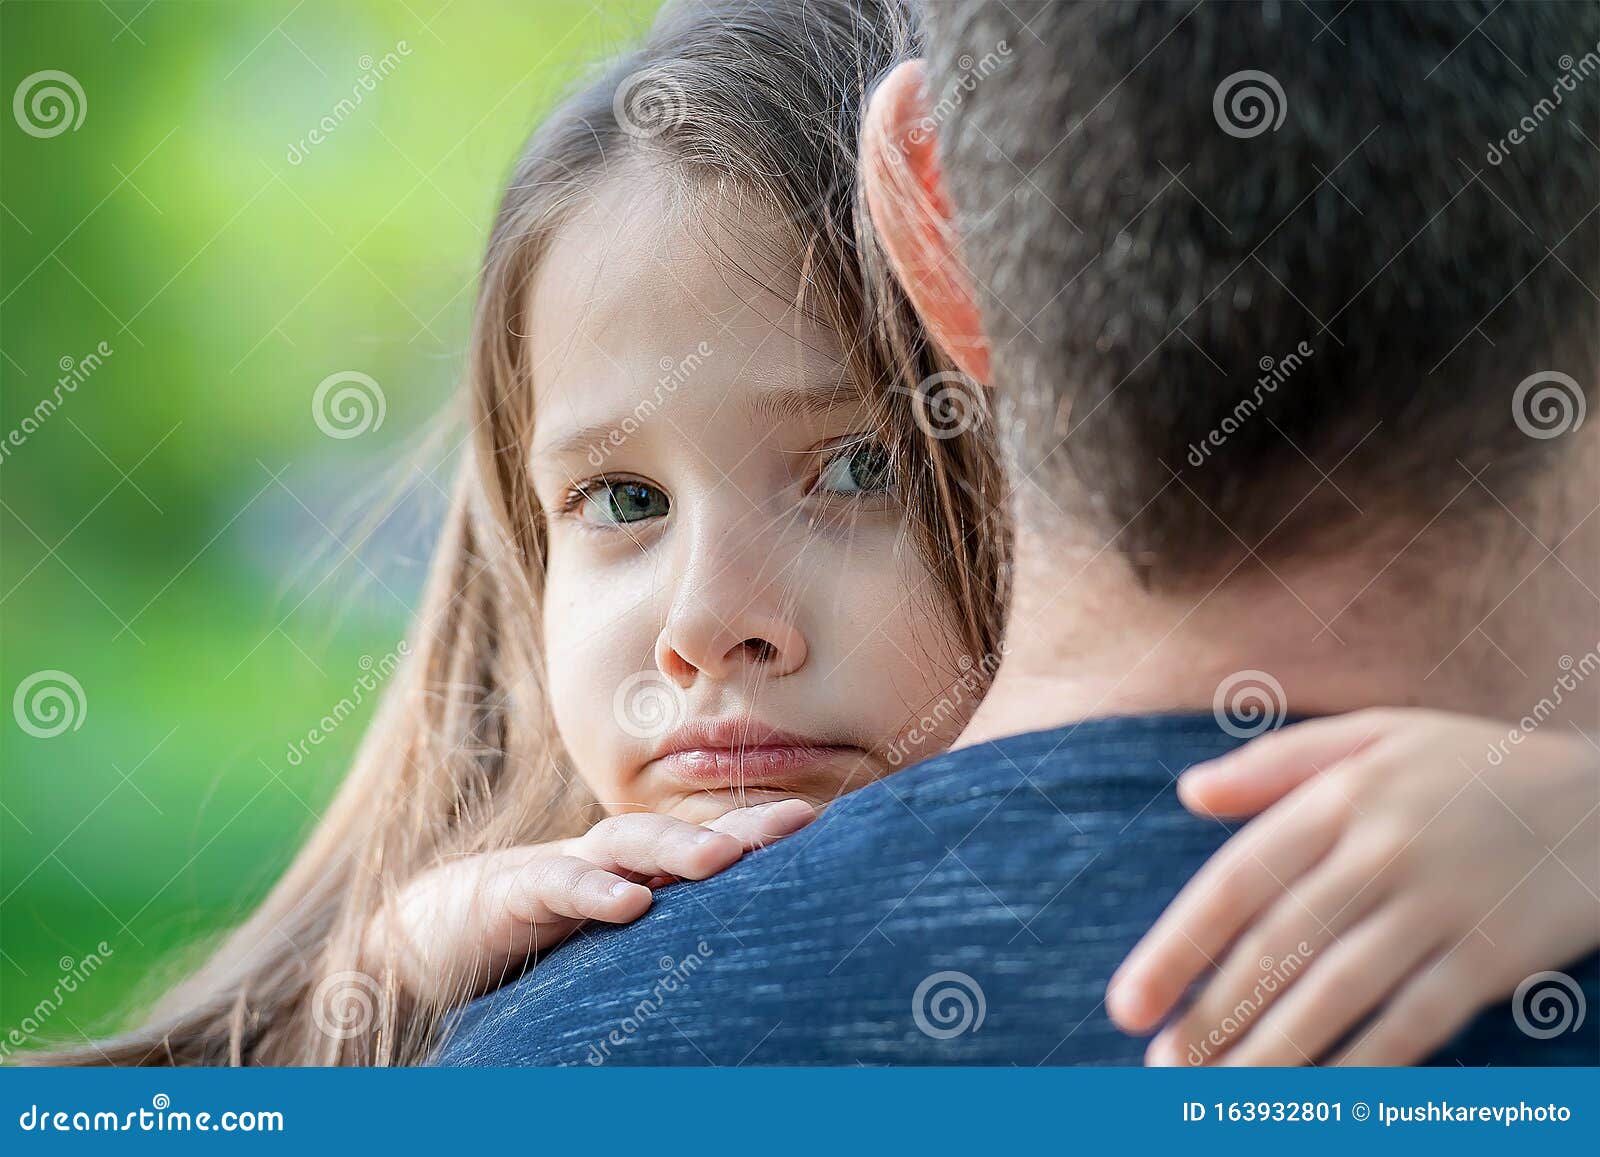 悲伤的儿子拥抱了父亲 库存图片. 图片 包括有 父项, 子项, 沮丧, 父亲, 哀伤, 哭泣, 情感, 恐惧 - 211095149